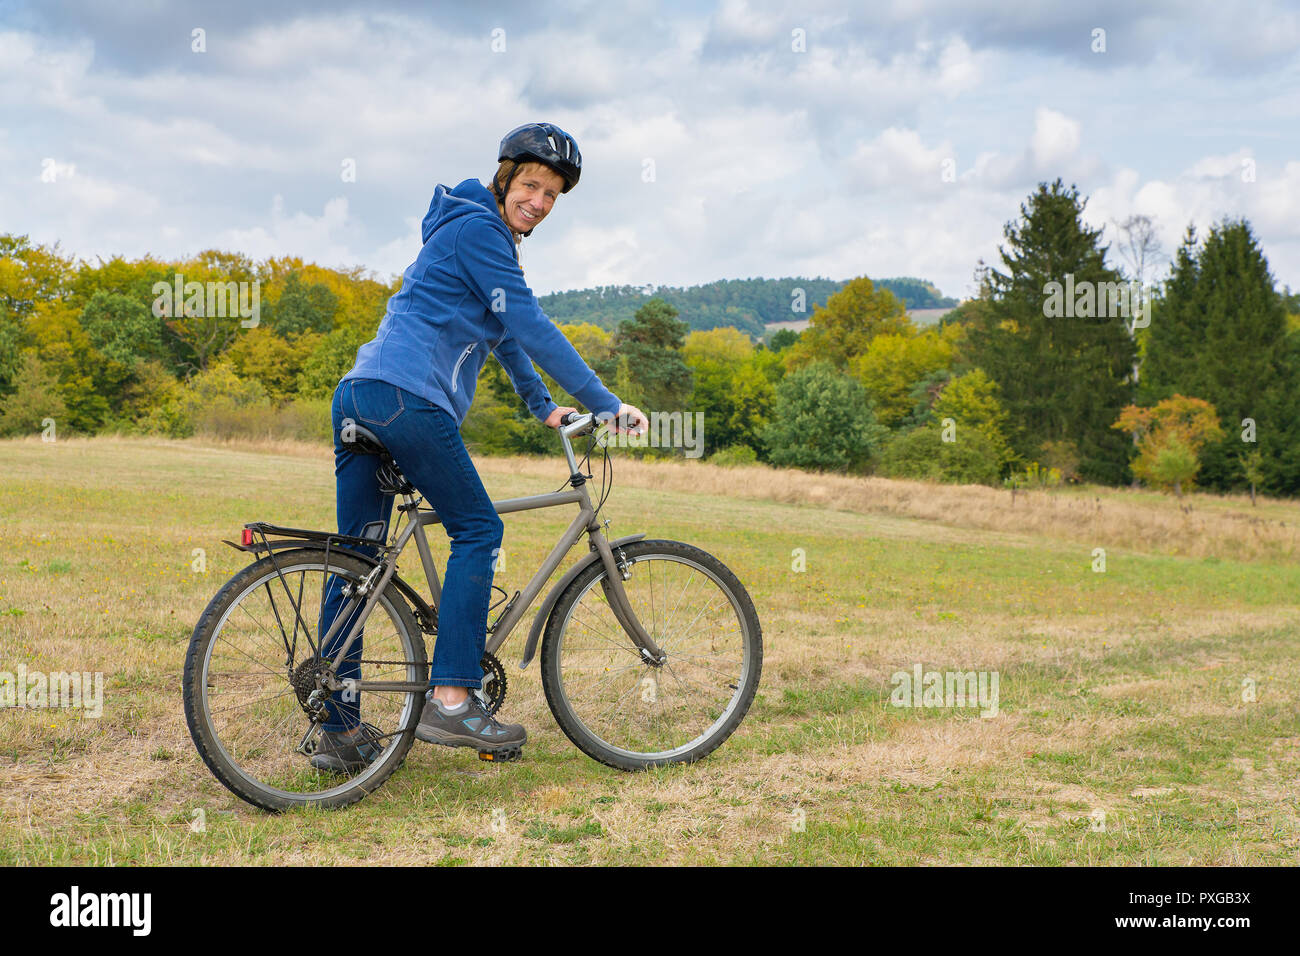 Caucasian woman on mountain bike dans paysage naturel Banque D'Images